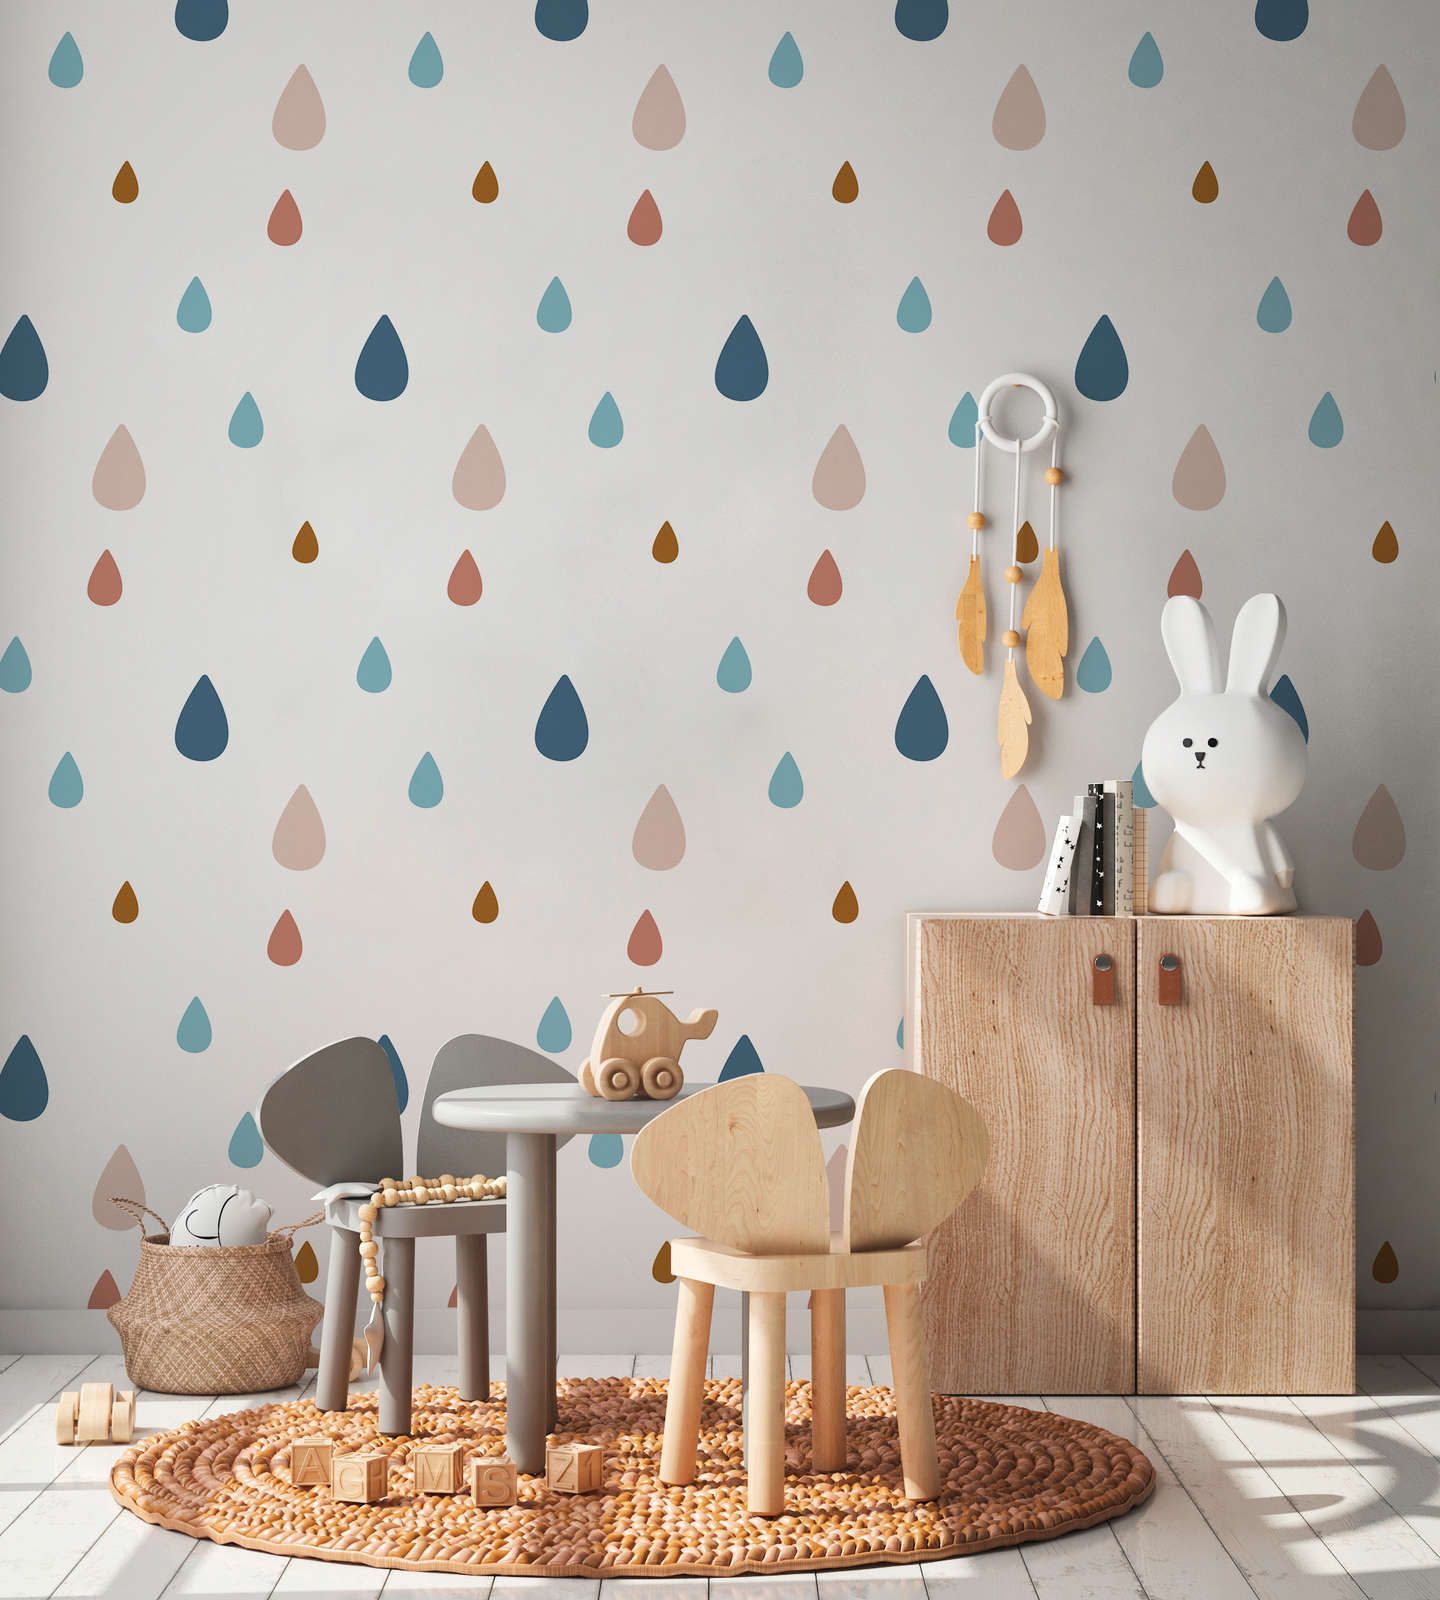             Fototapete fürs Kinderzimmer mit bunten Wassertropfen – Glattes & mattes Vlies
        